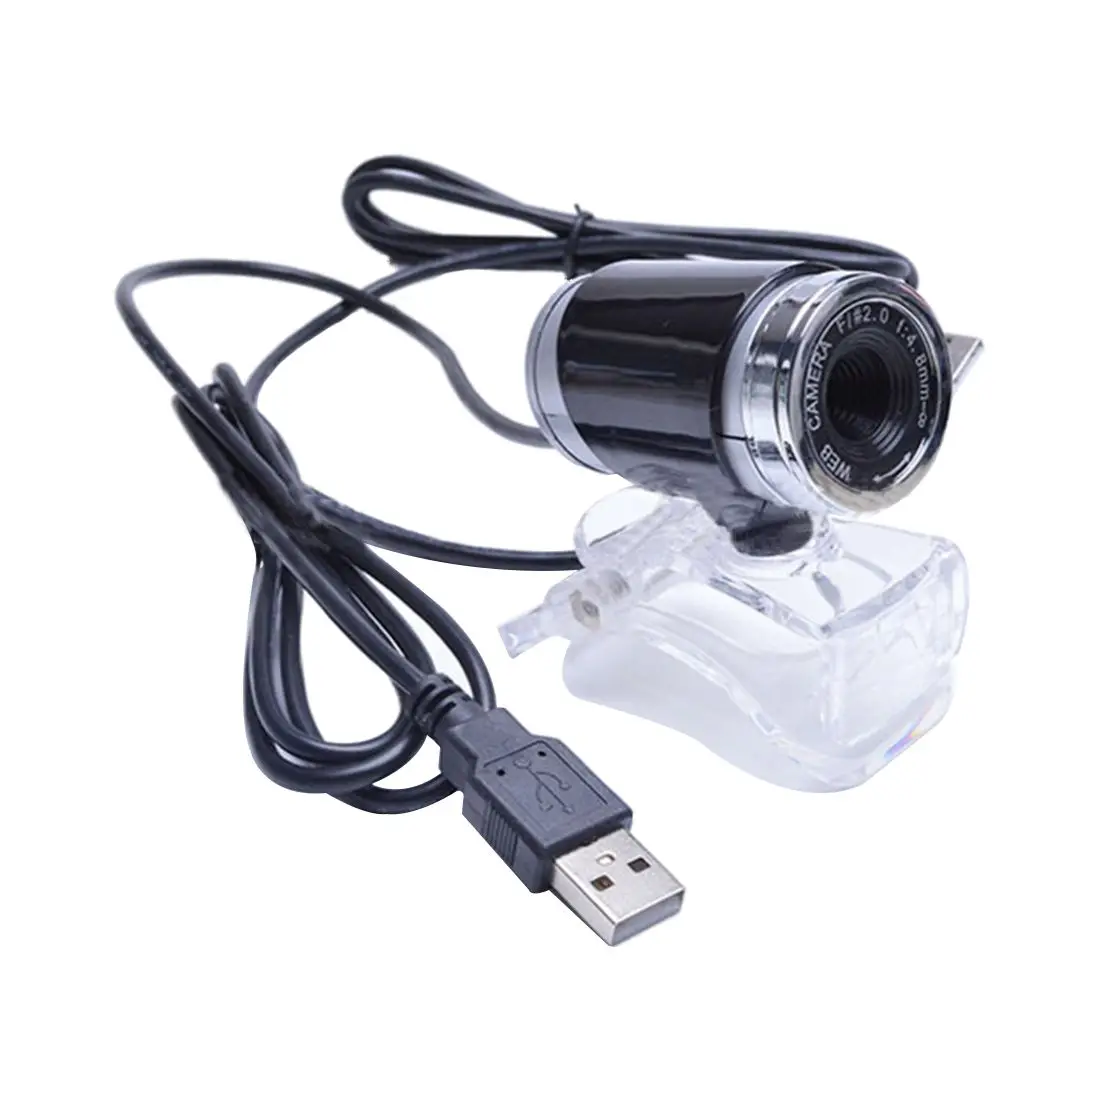 Веб-камера USB веб-камера настольная камера со встроенным микрофоном Для видеосвязи и записи на Skype/FaceTime/YouTube/